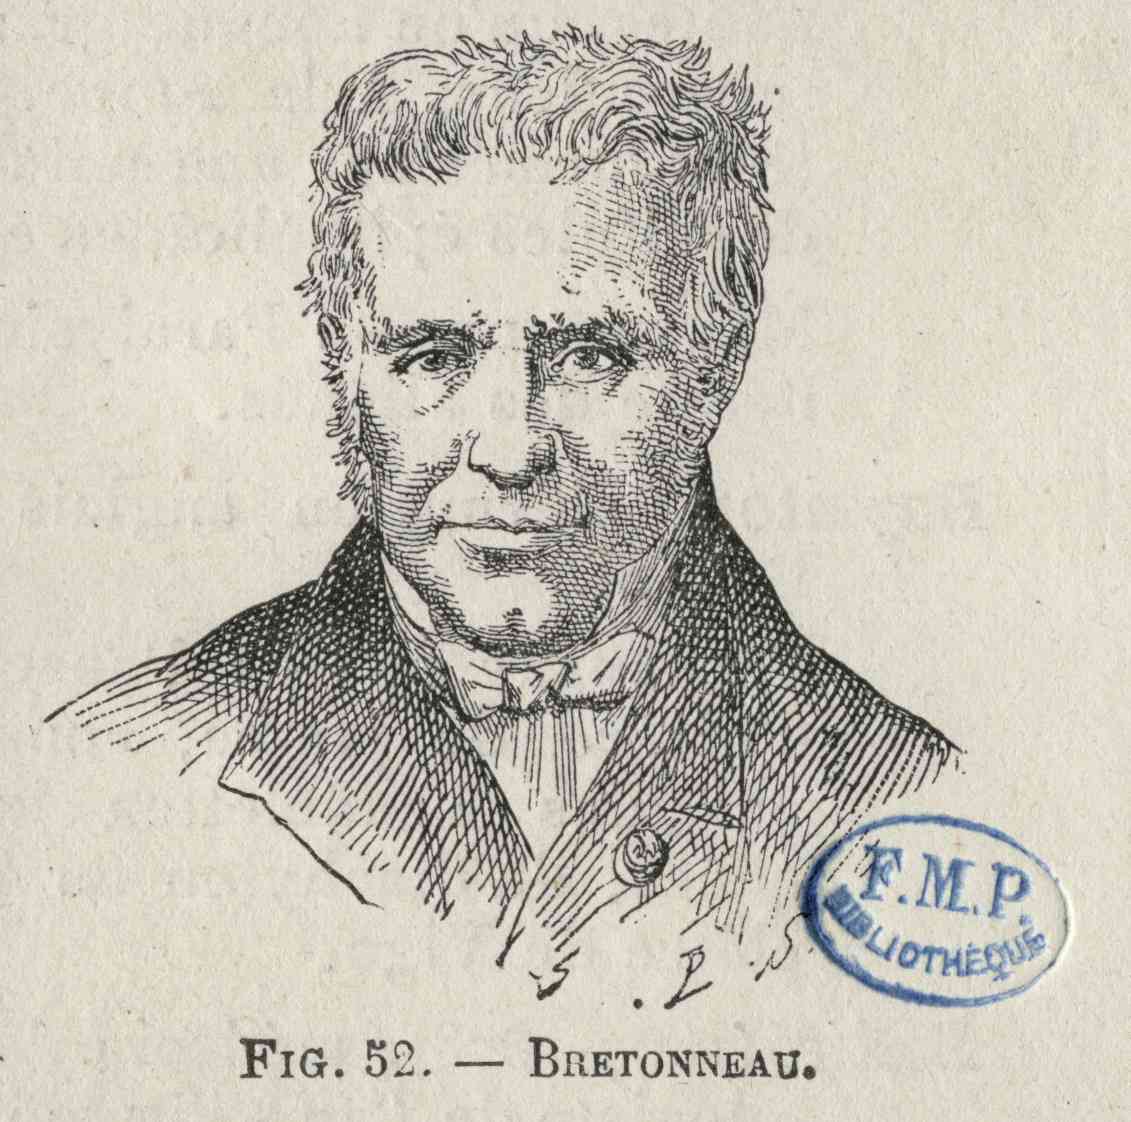 Pierre Bretonneau